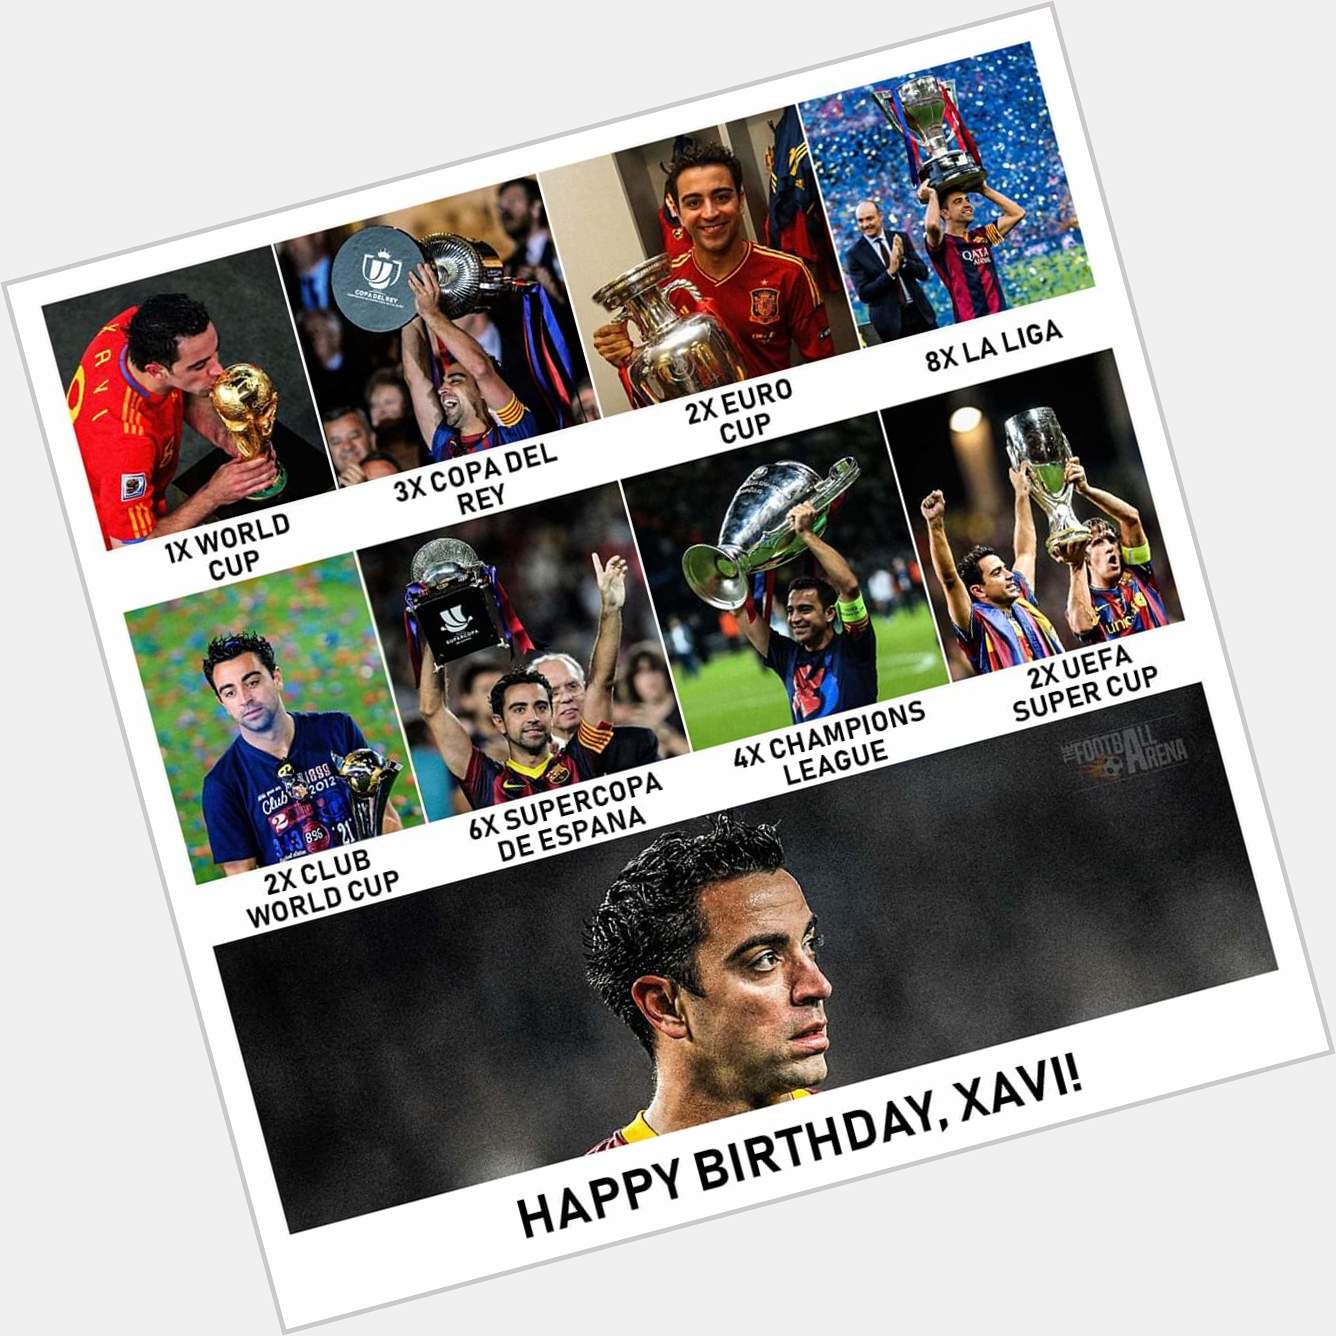 Happy Birthday, Xavi Hernandez  